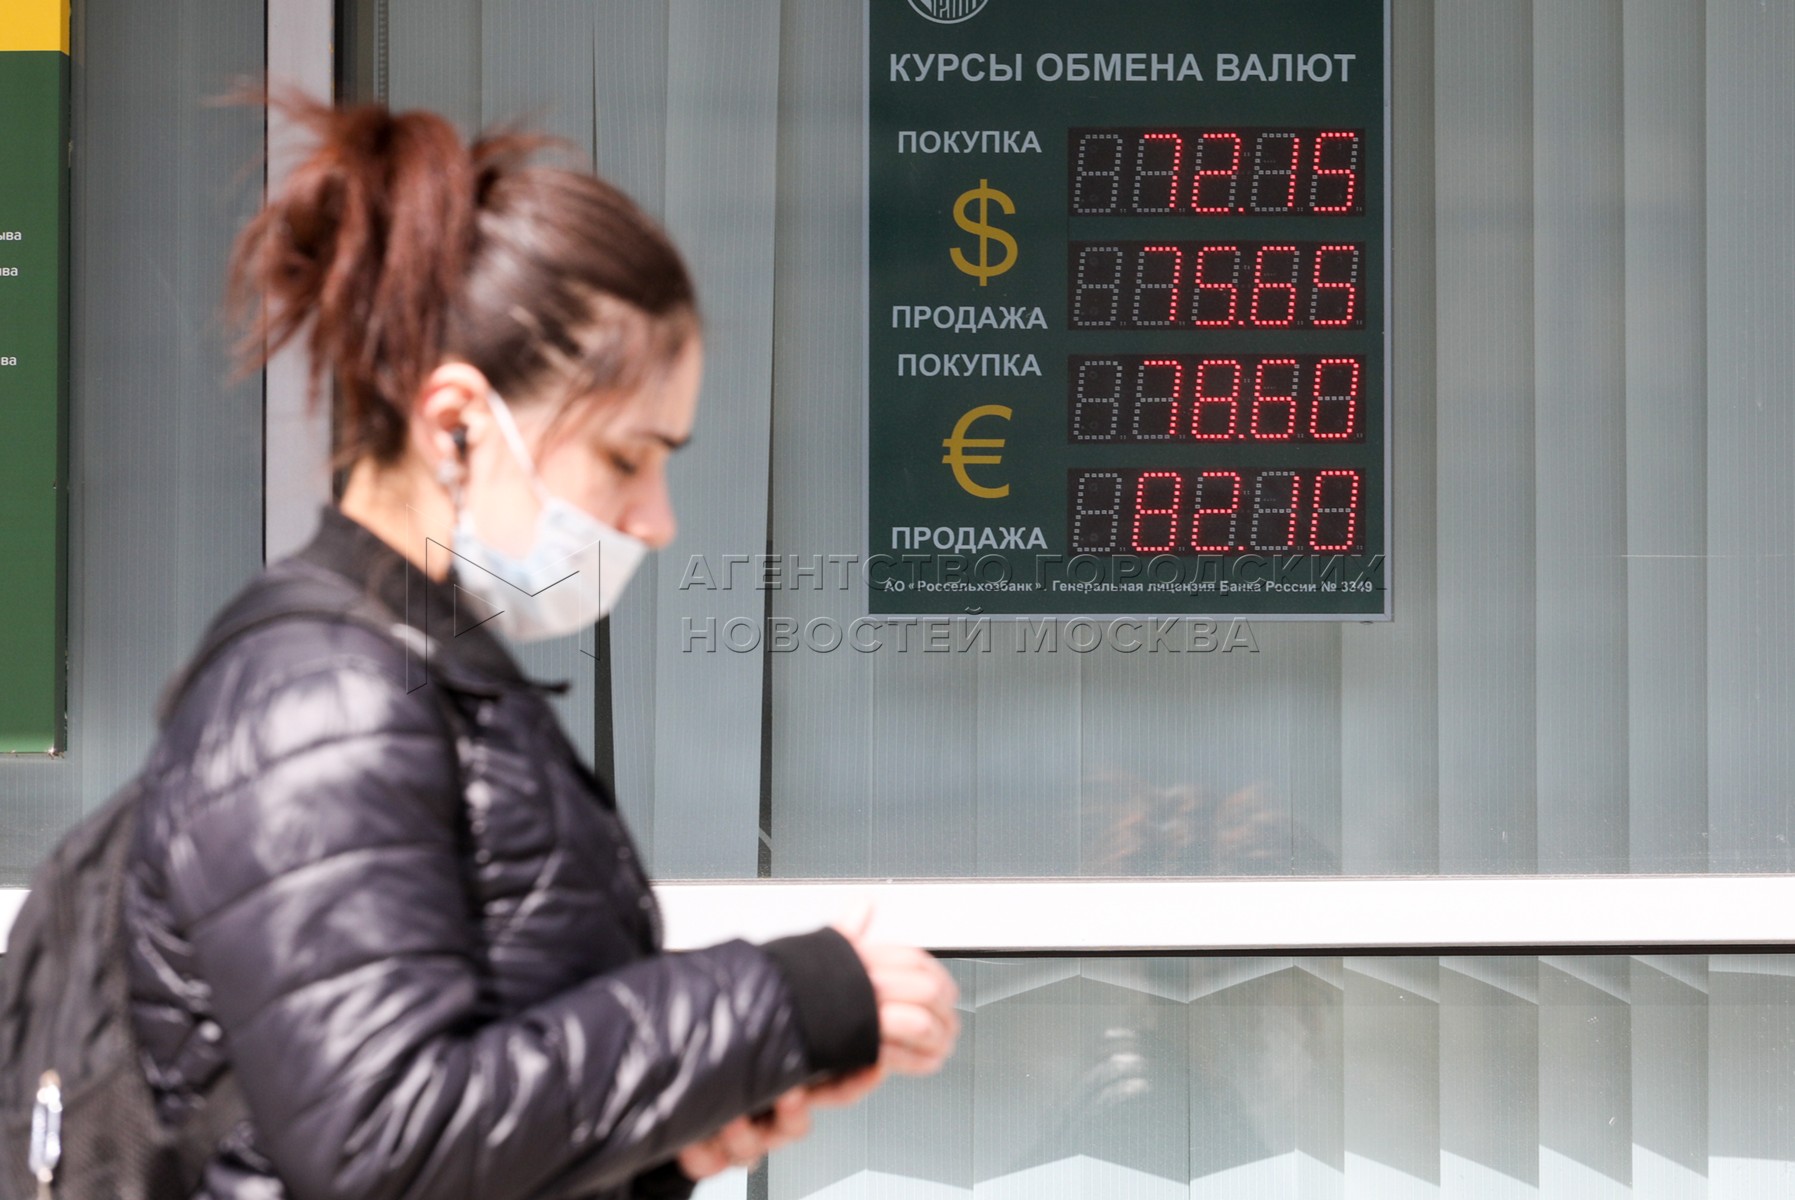 Обмен валют в обменных пунктах москвы есть приватный ключ биткоин как проверить баланс